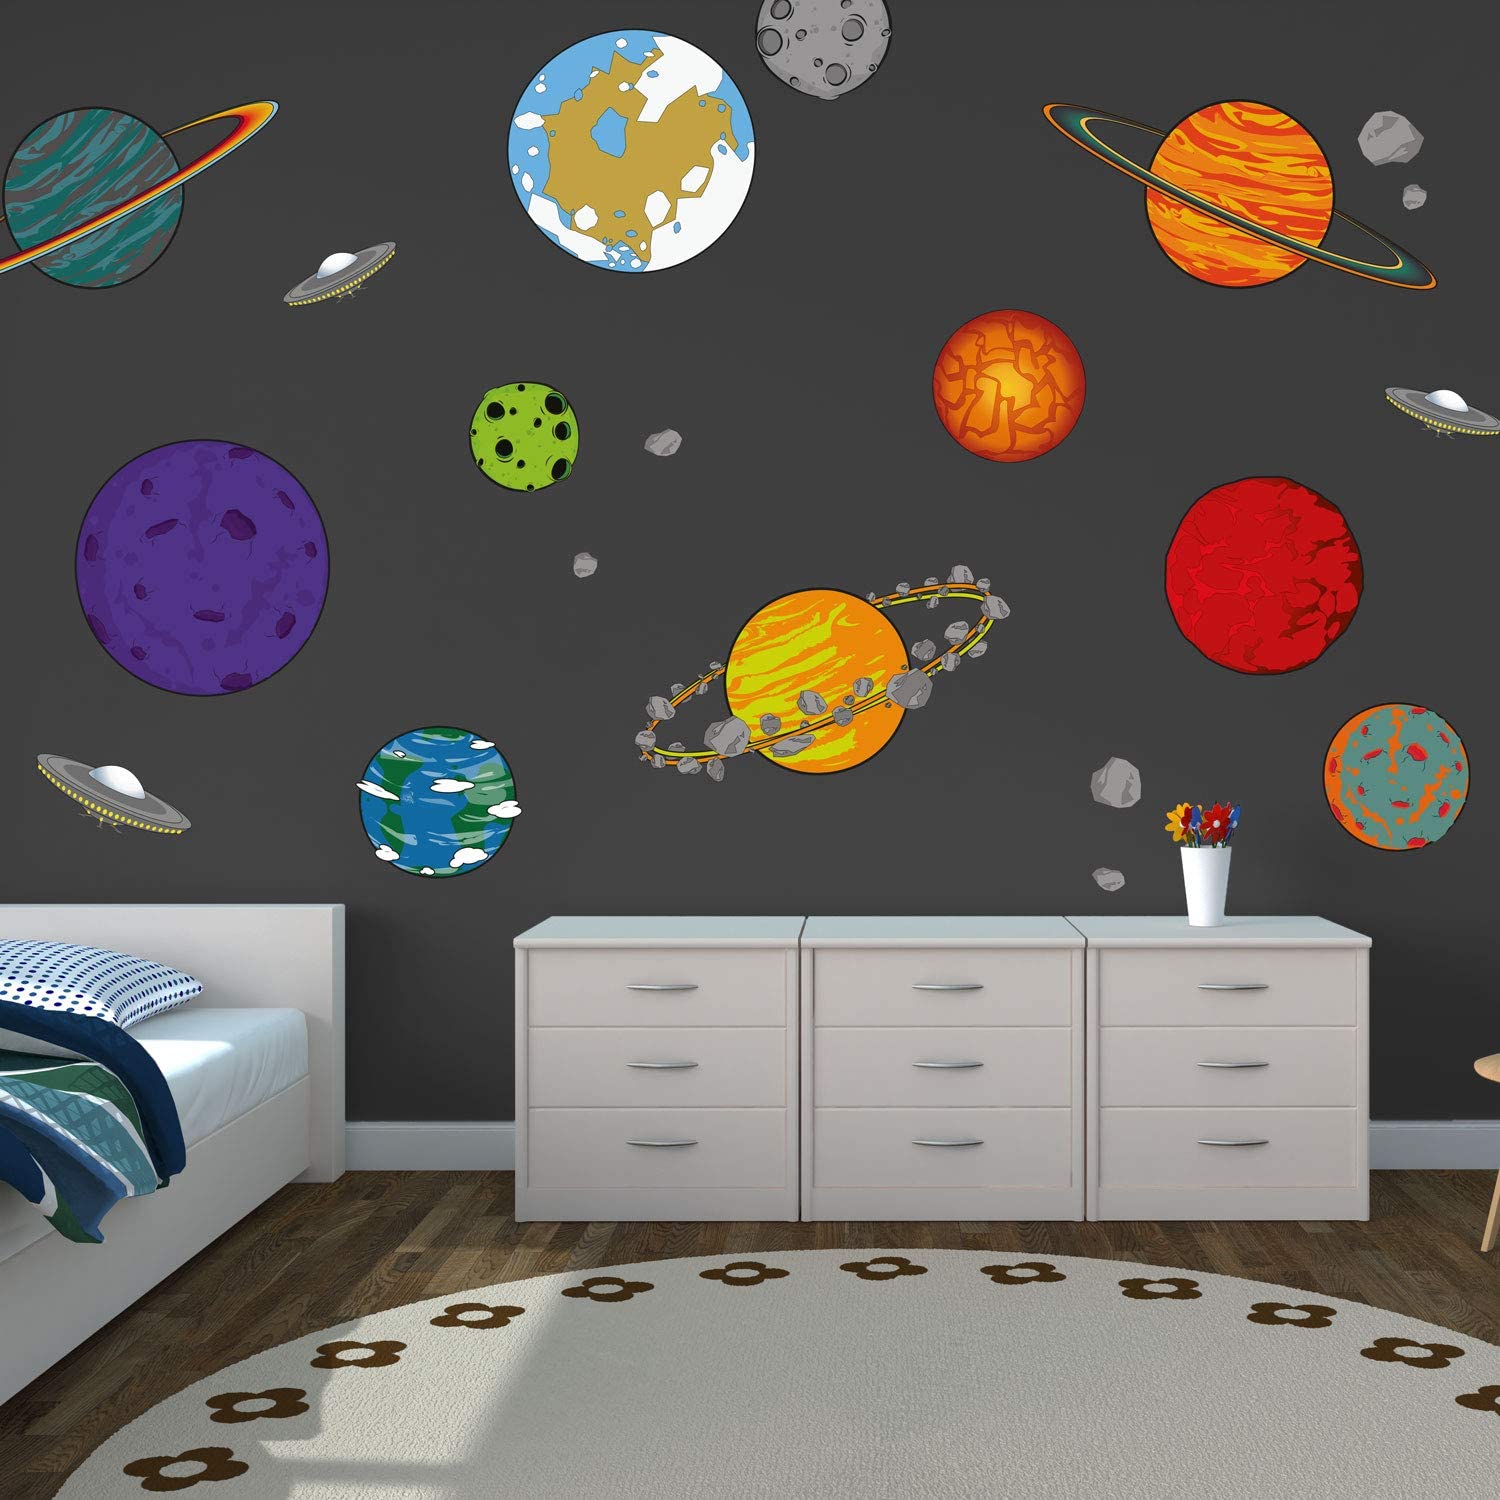 Как оформить комнату в стиле космос: фото, идеи по оформлению